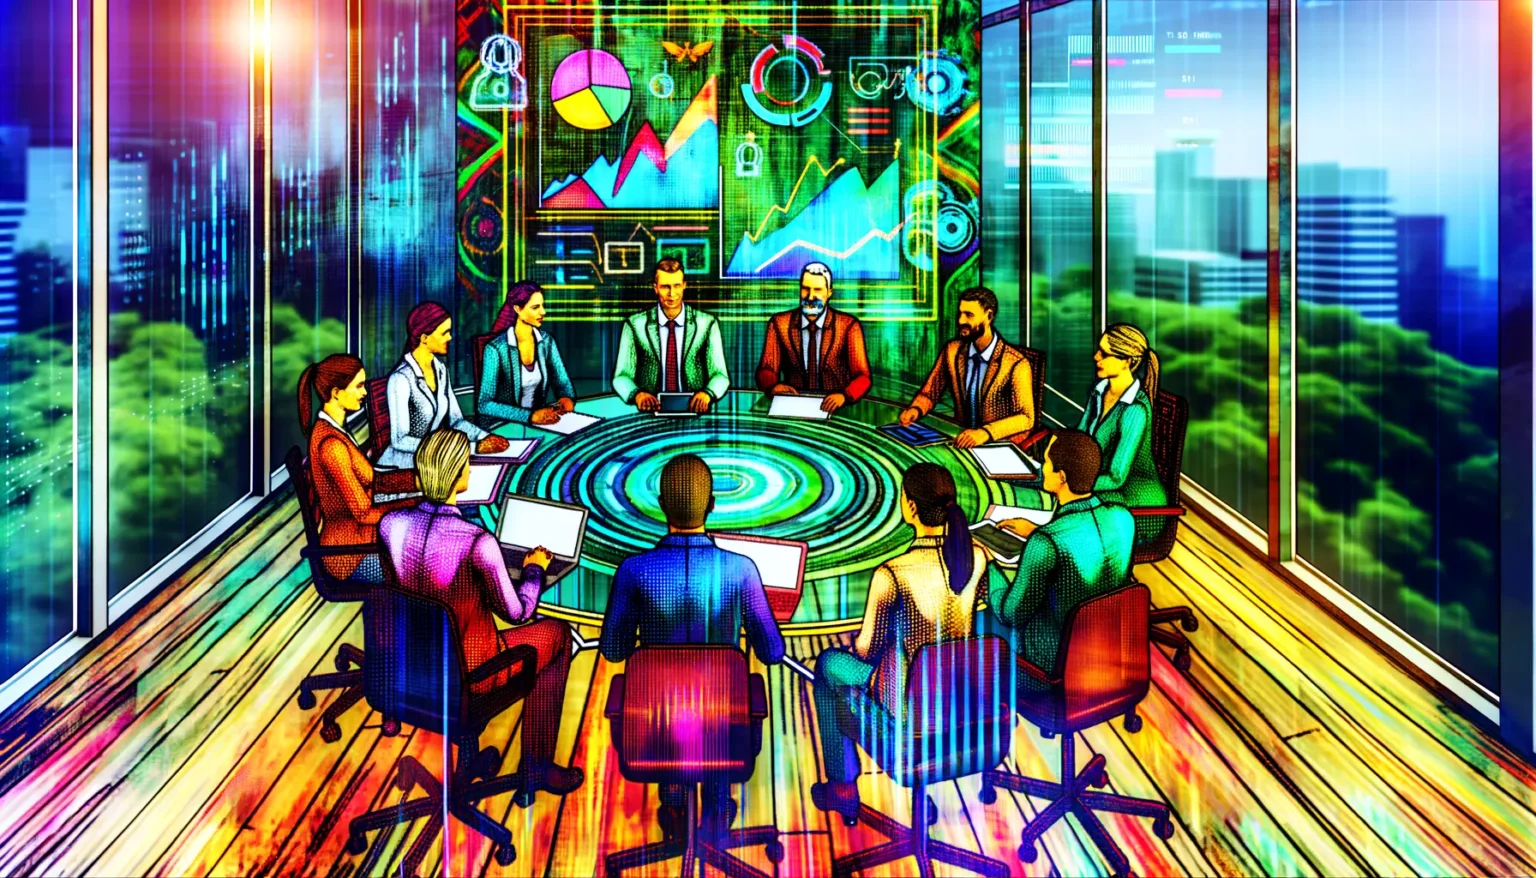 Illustration eines modernen Geschäftstreffens in einem Konferenzraum mit einer Gruppe von Personen, die an einem runden Tisch sitzen. Im Hintergrund sind durch große Fenster Ausblicke auf eine Stadt mit Hochhäusern zu sehen. Über dem Tisch schwebt ein futuristisches Hologramm mit verschiedenen Diagrammen und Datenvisualisierungen. Die Umgebung ist farbenfroh und im Kunststil gehalten, mit leuchtenden Linien und Mustern, die einen dynamischen und technologisch fortgeschrittenen Eindruck vermitteln.